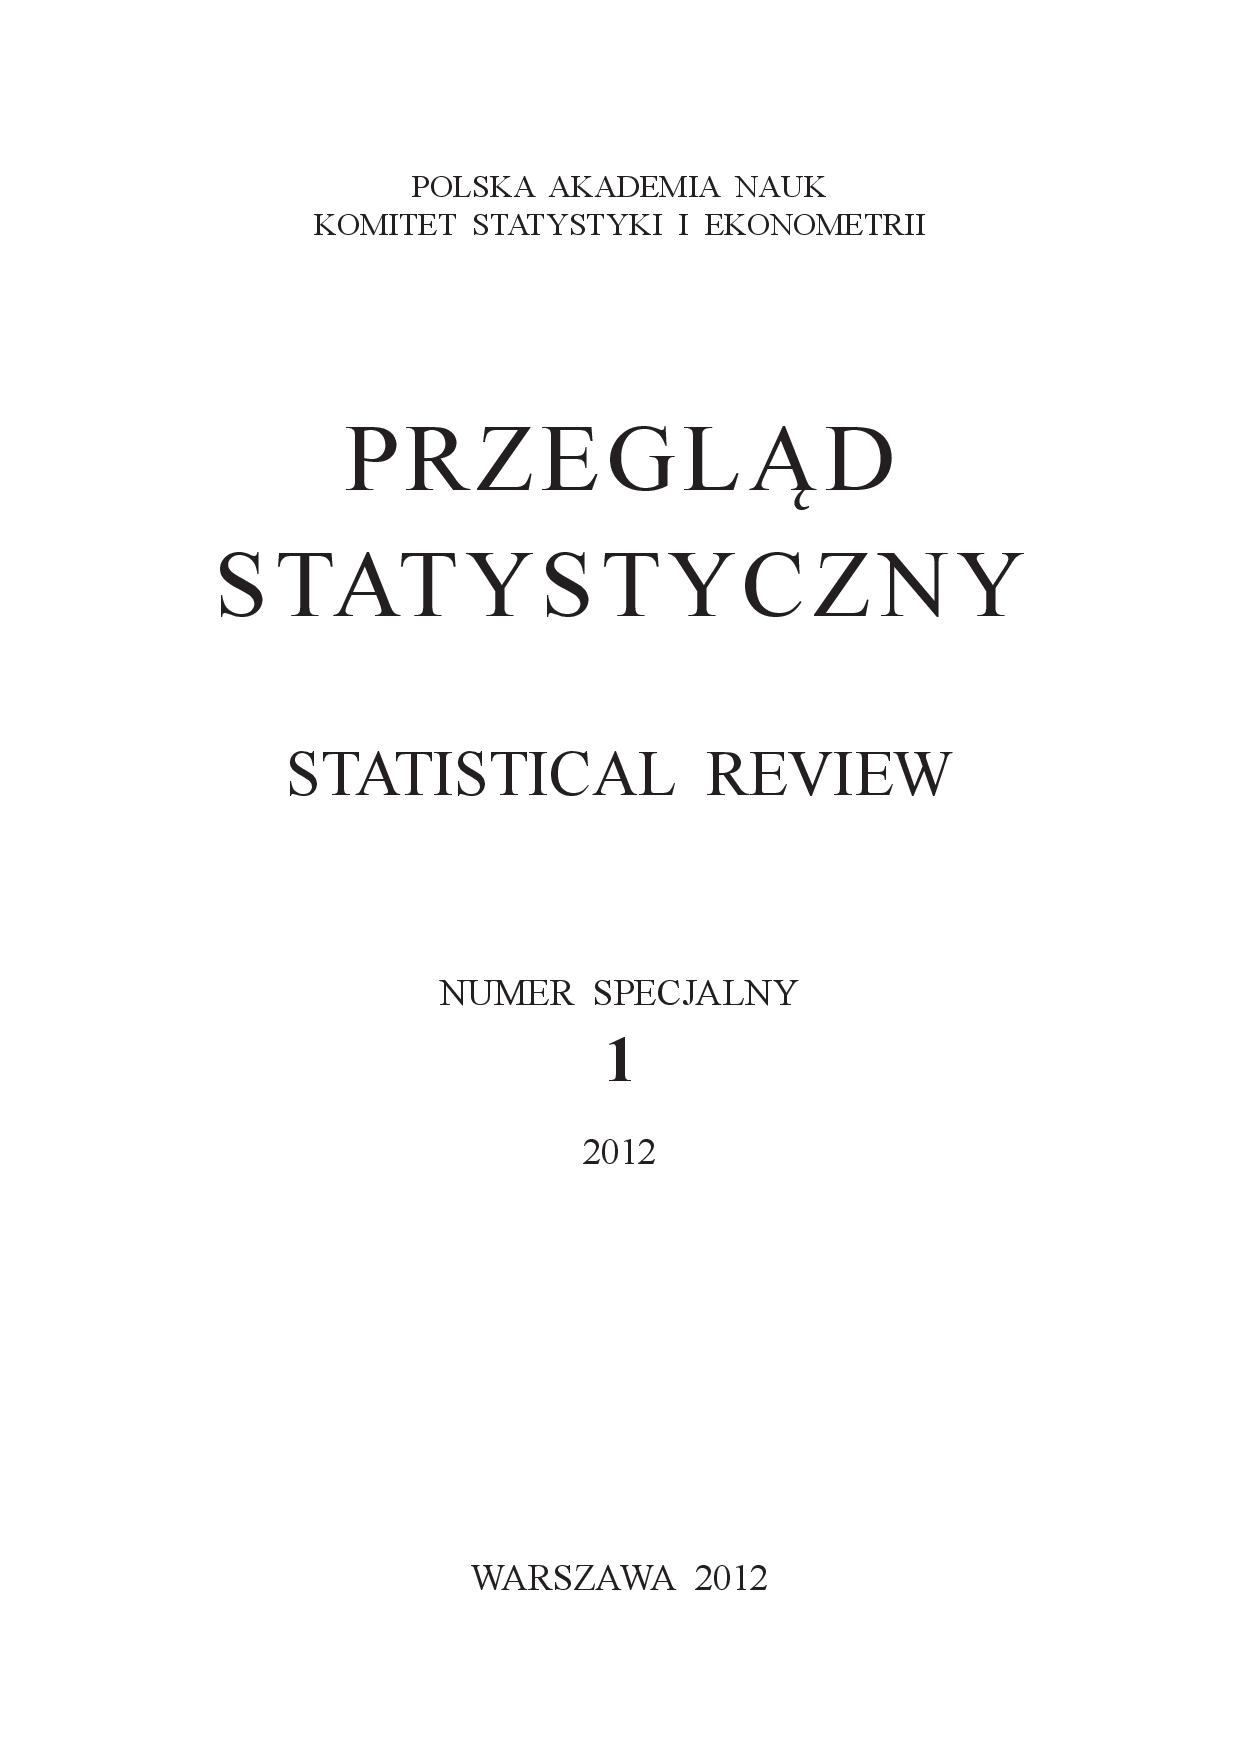 Współzależność pomiędzy rozwojem teorii i praktyki badań reprezentacyjnych w Polsce